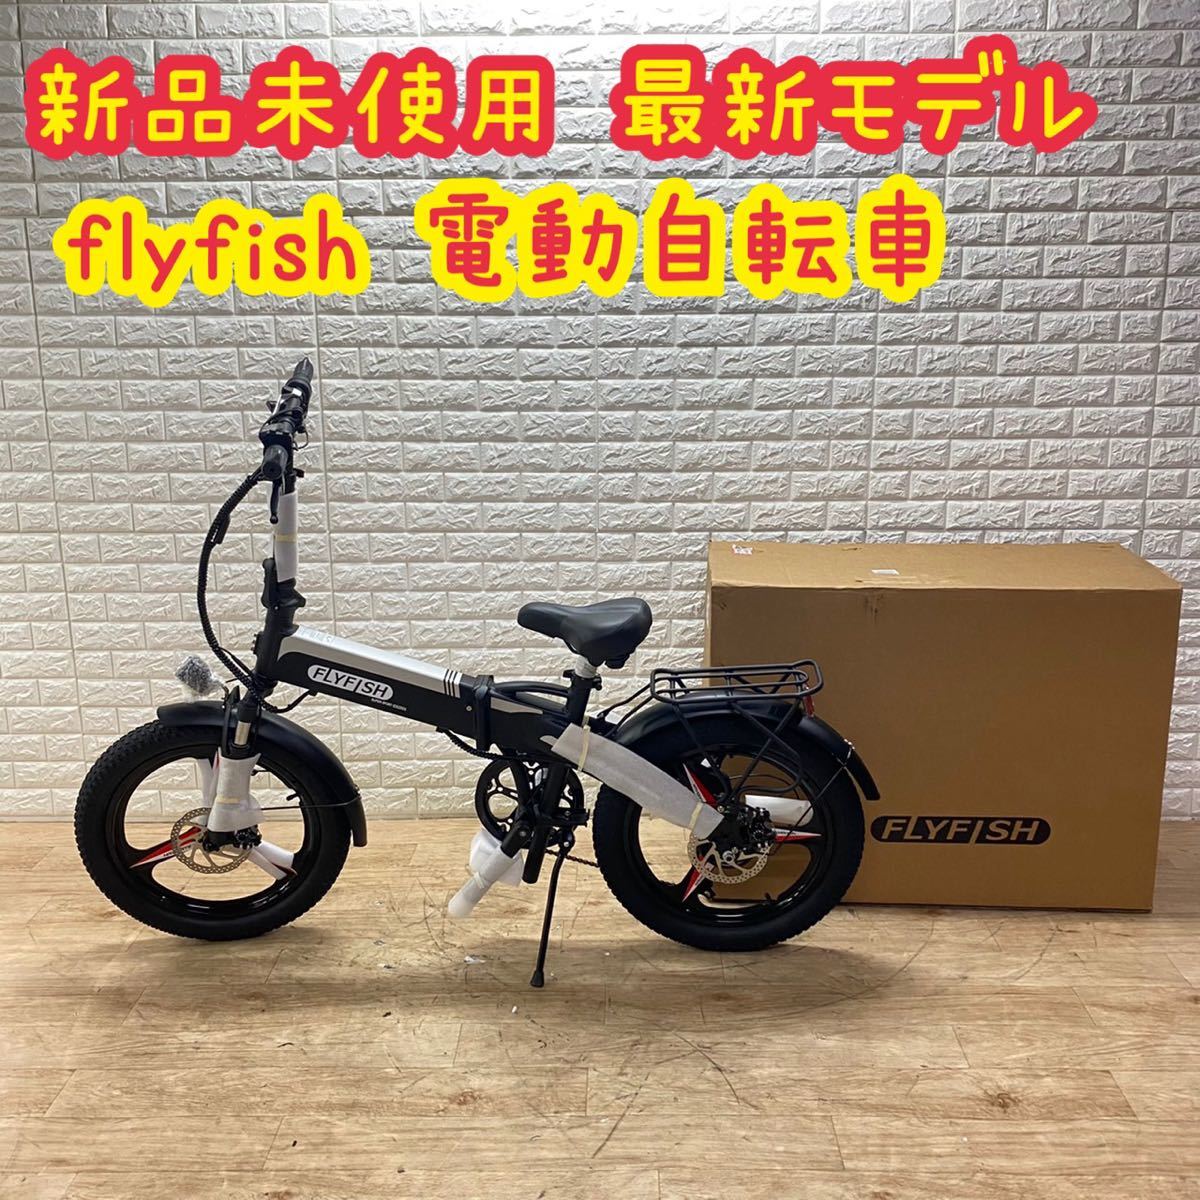 新品 未使用 flyfish 電動自転車 電動アシスト 自転車 折りたたみ www